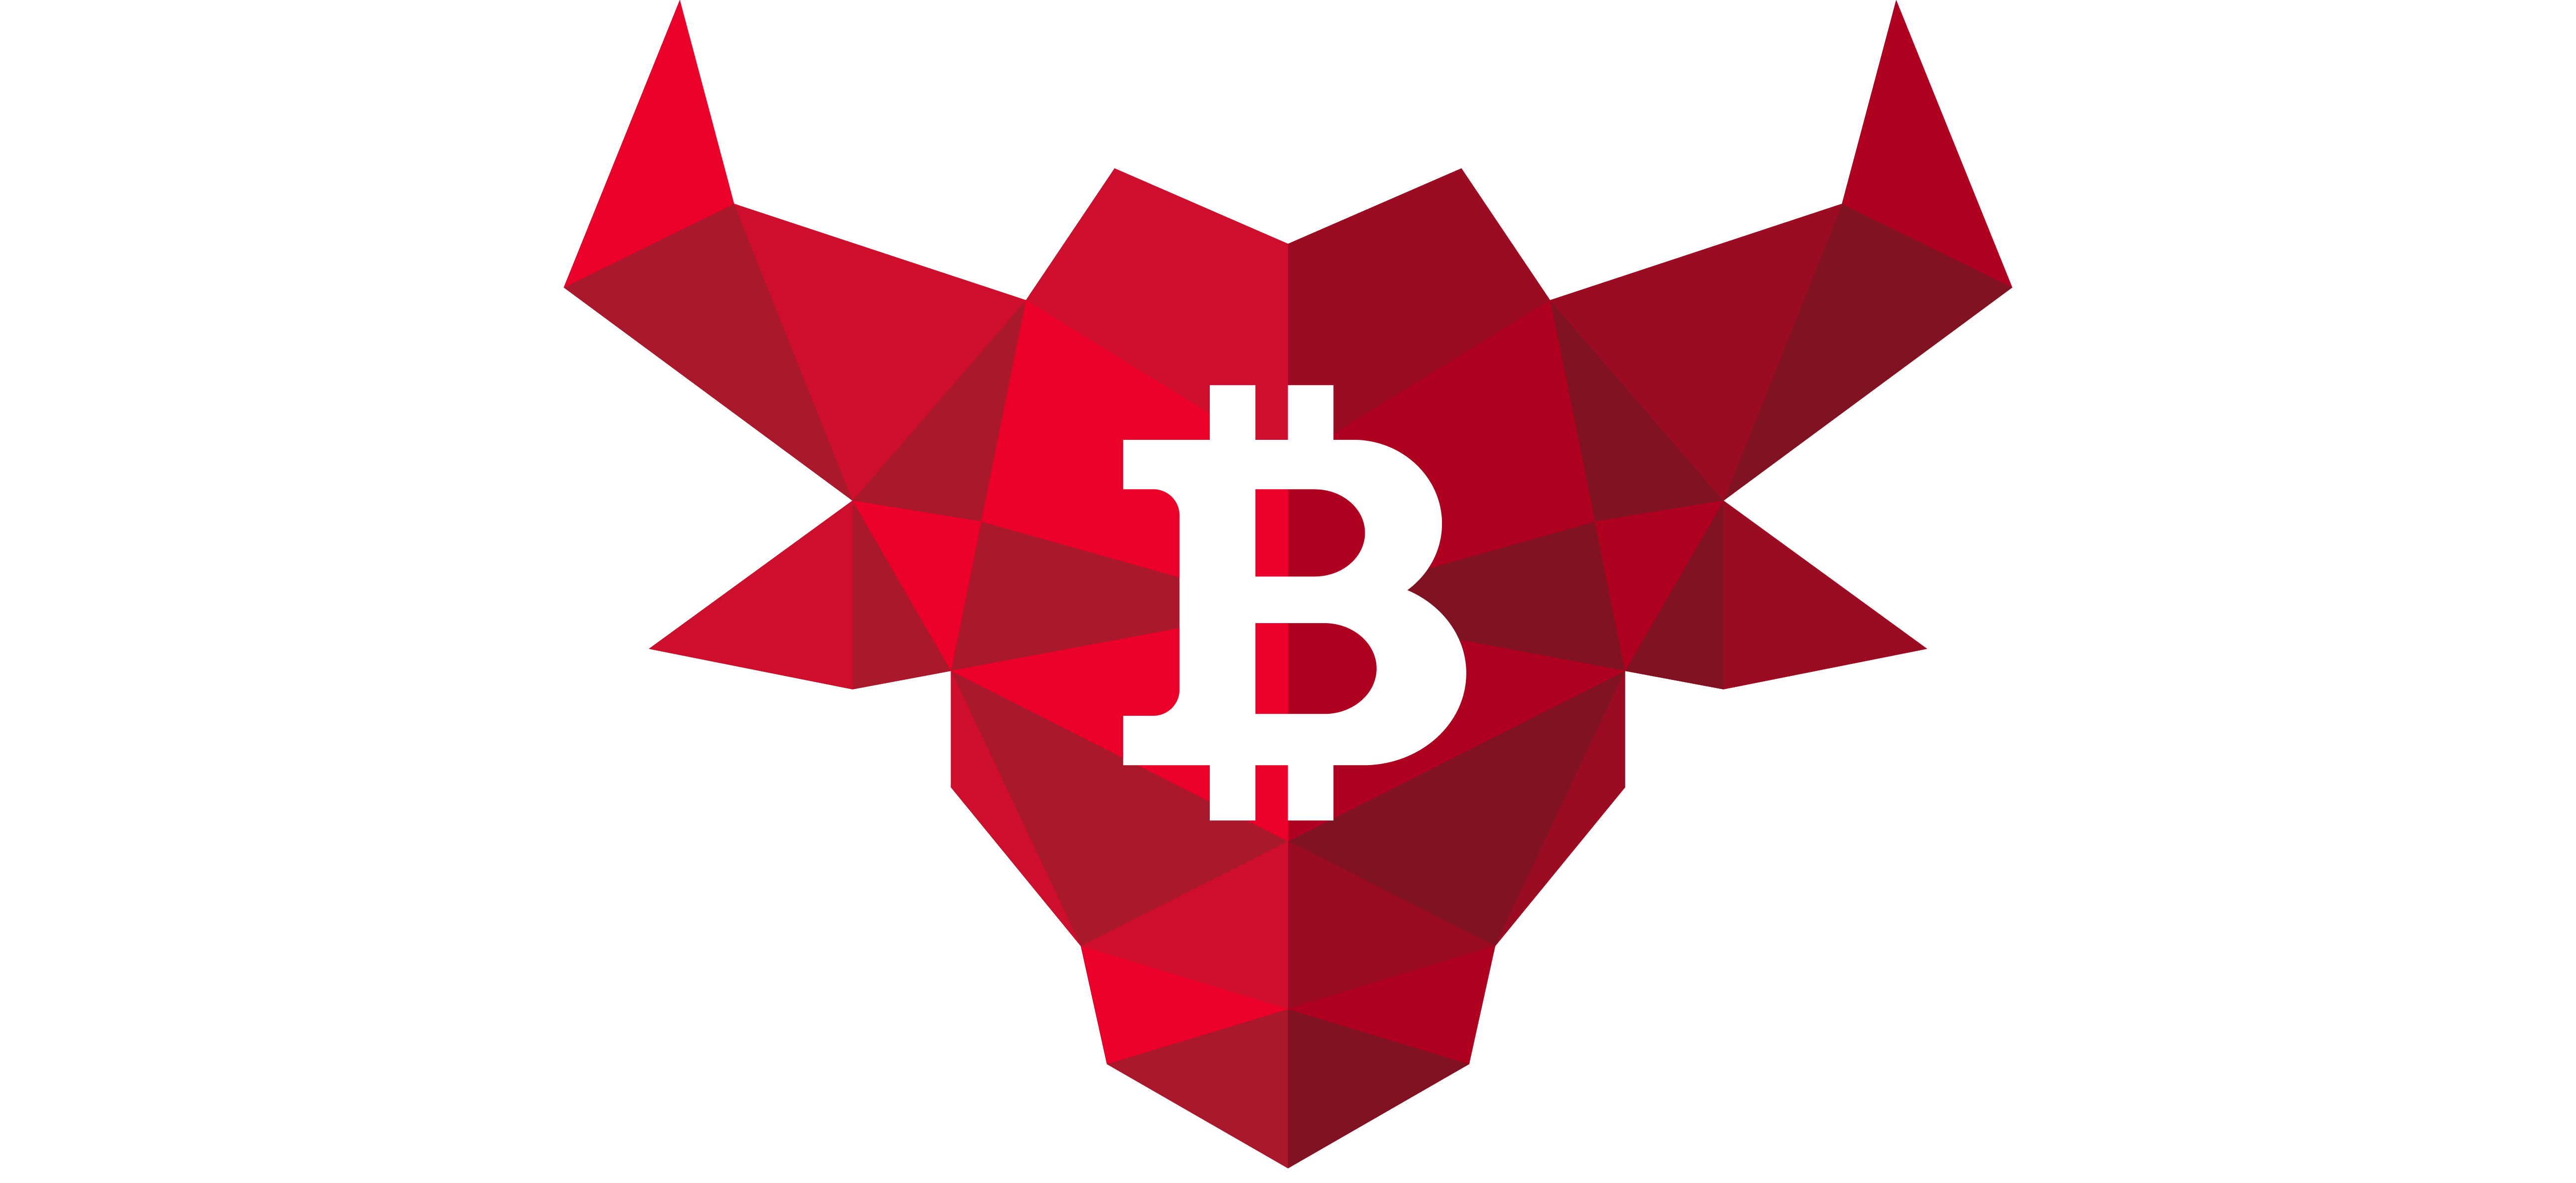 Bitcoin exchange coinbase steps į kanadą, eh